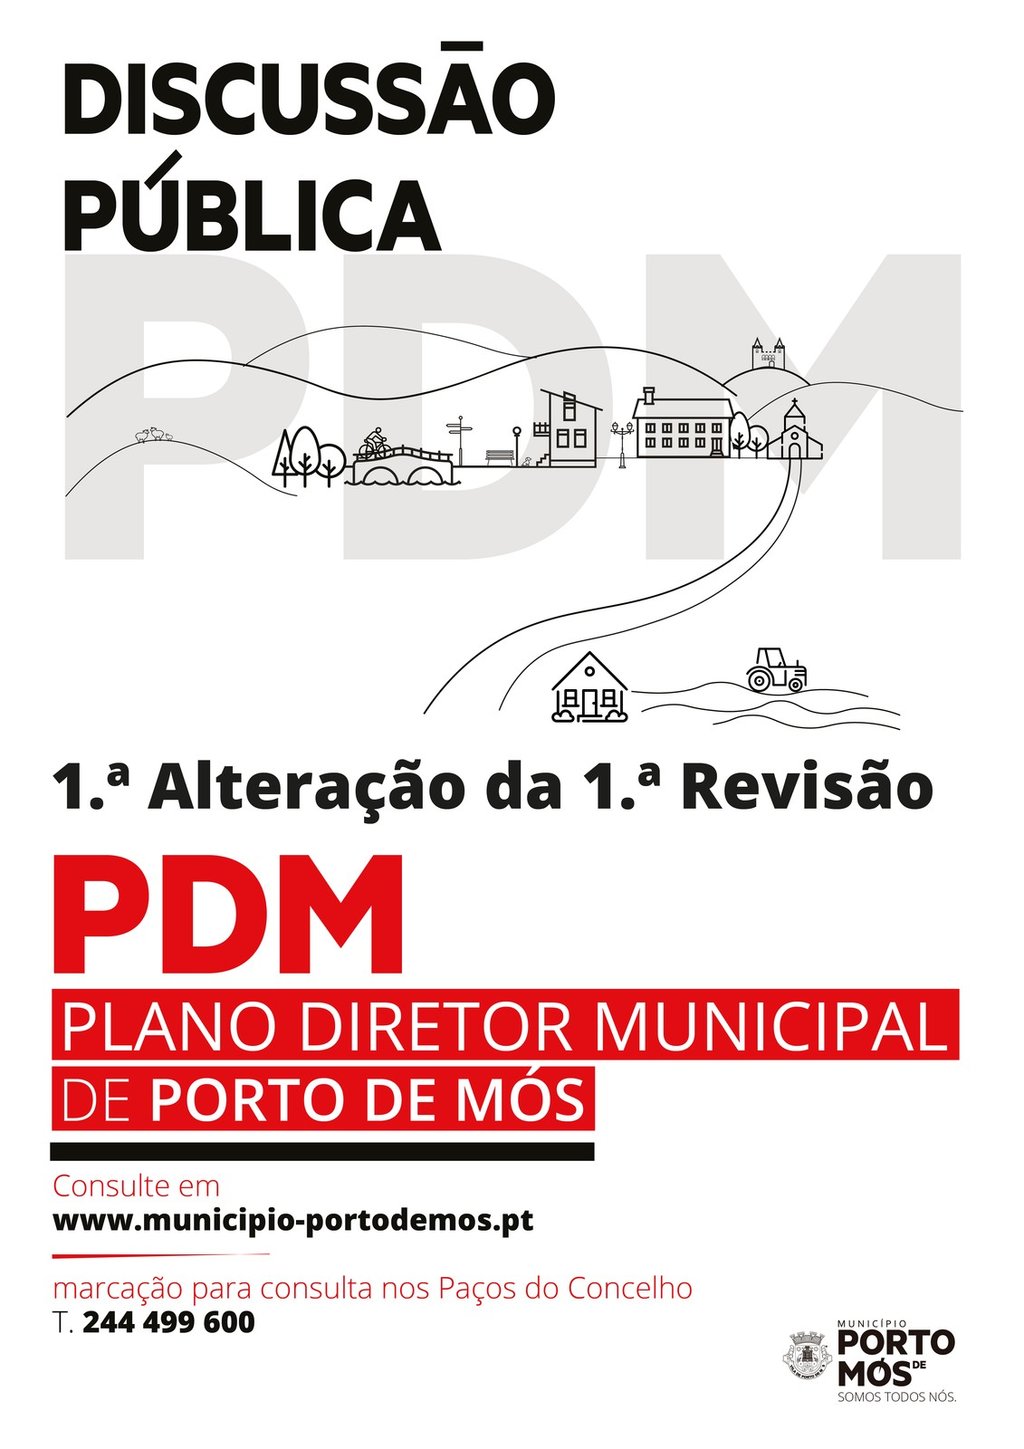 1.ª Alteração da 1.ª Revisão do PDM de Porto de Mós - Discussão Pública